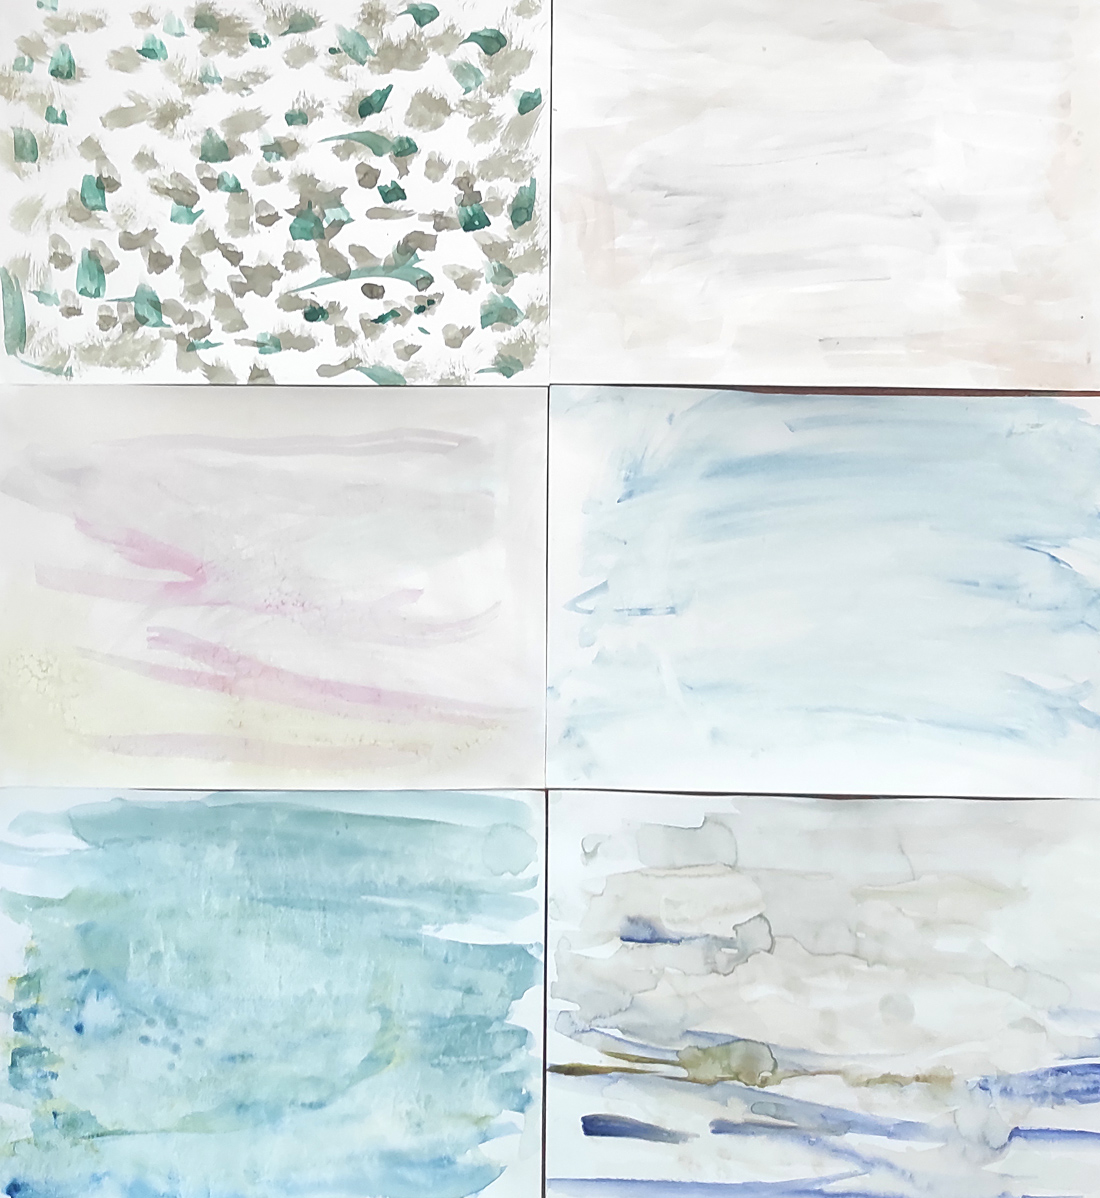 Acuarelas abstractas que imitan el Mar Blanco realizadas por alumnos de 1º Educación Primaria del Centro Educativo Gençana